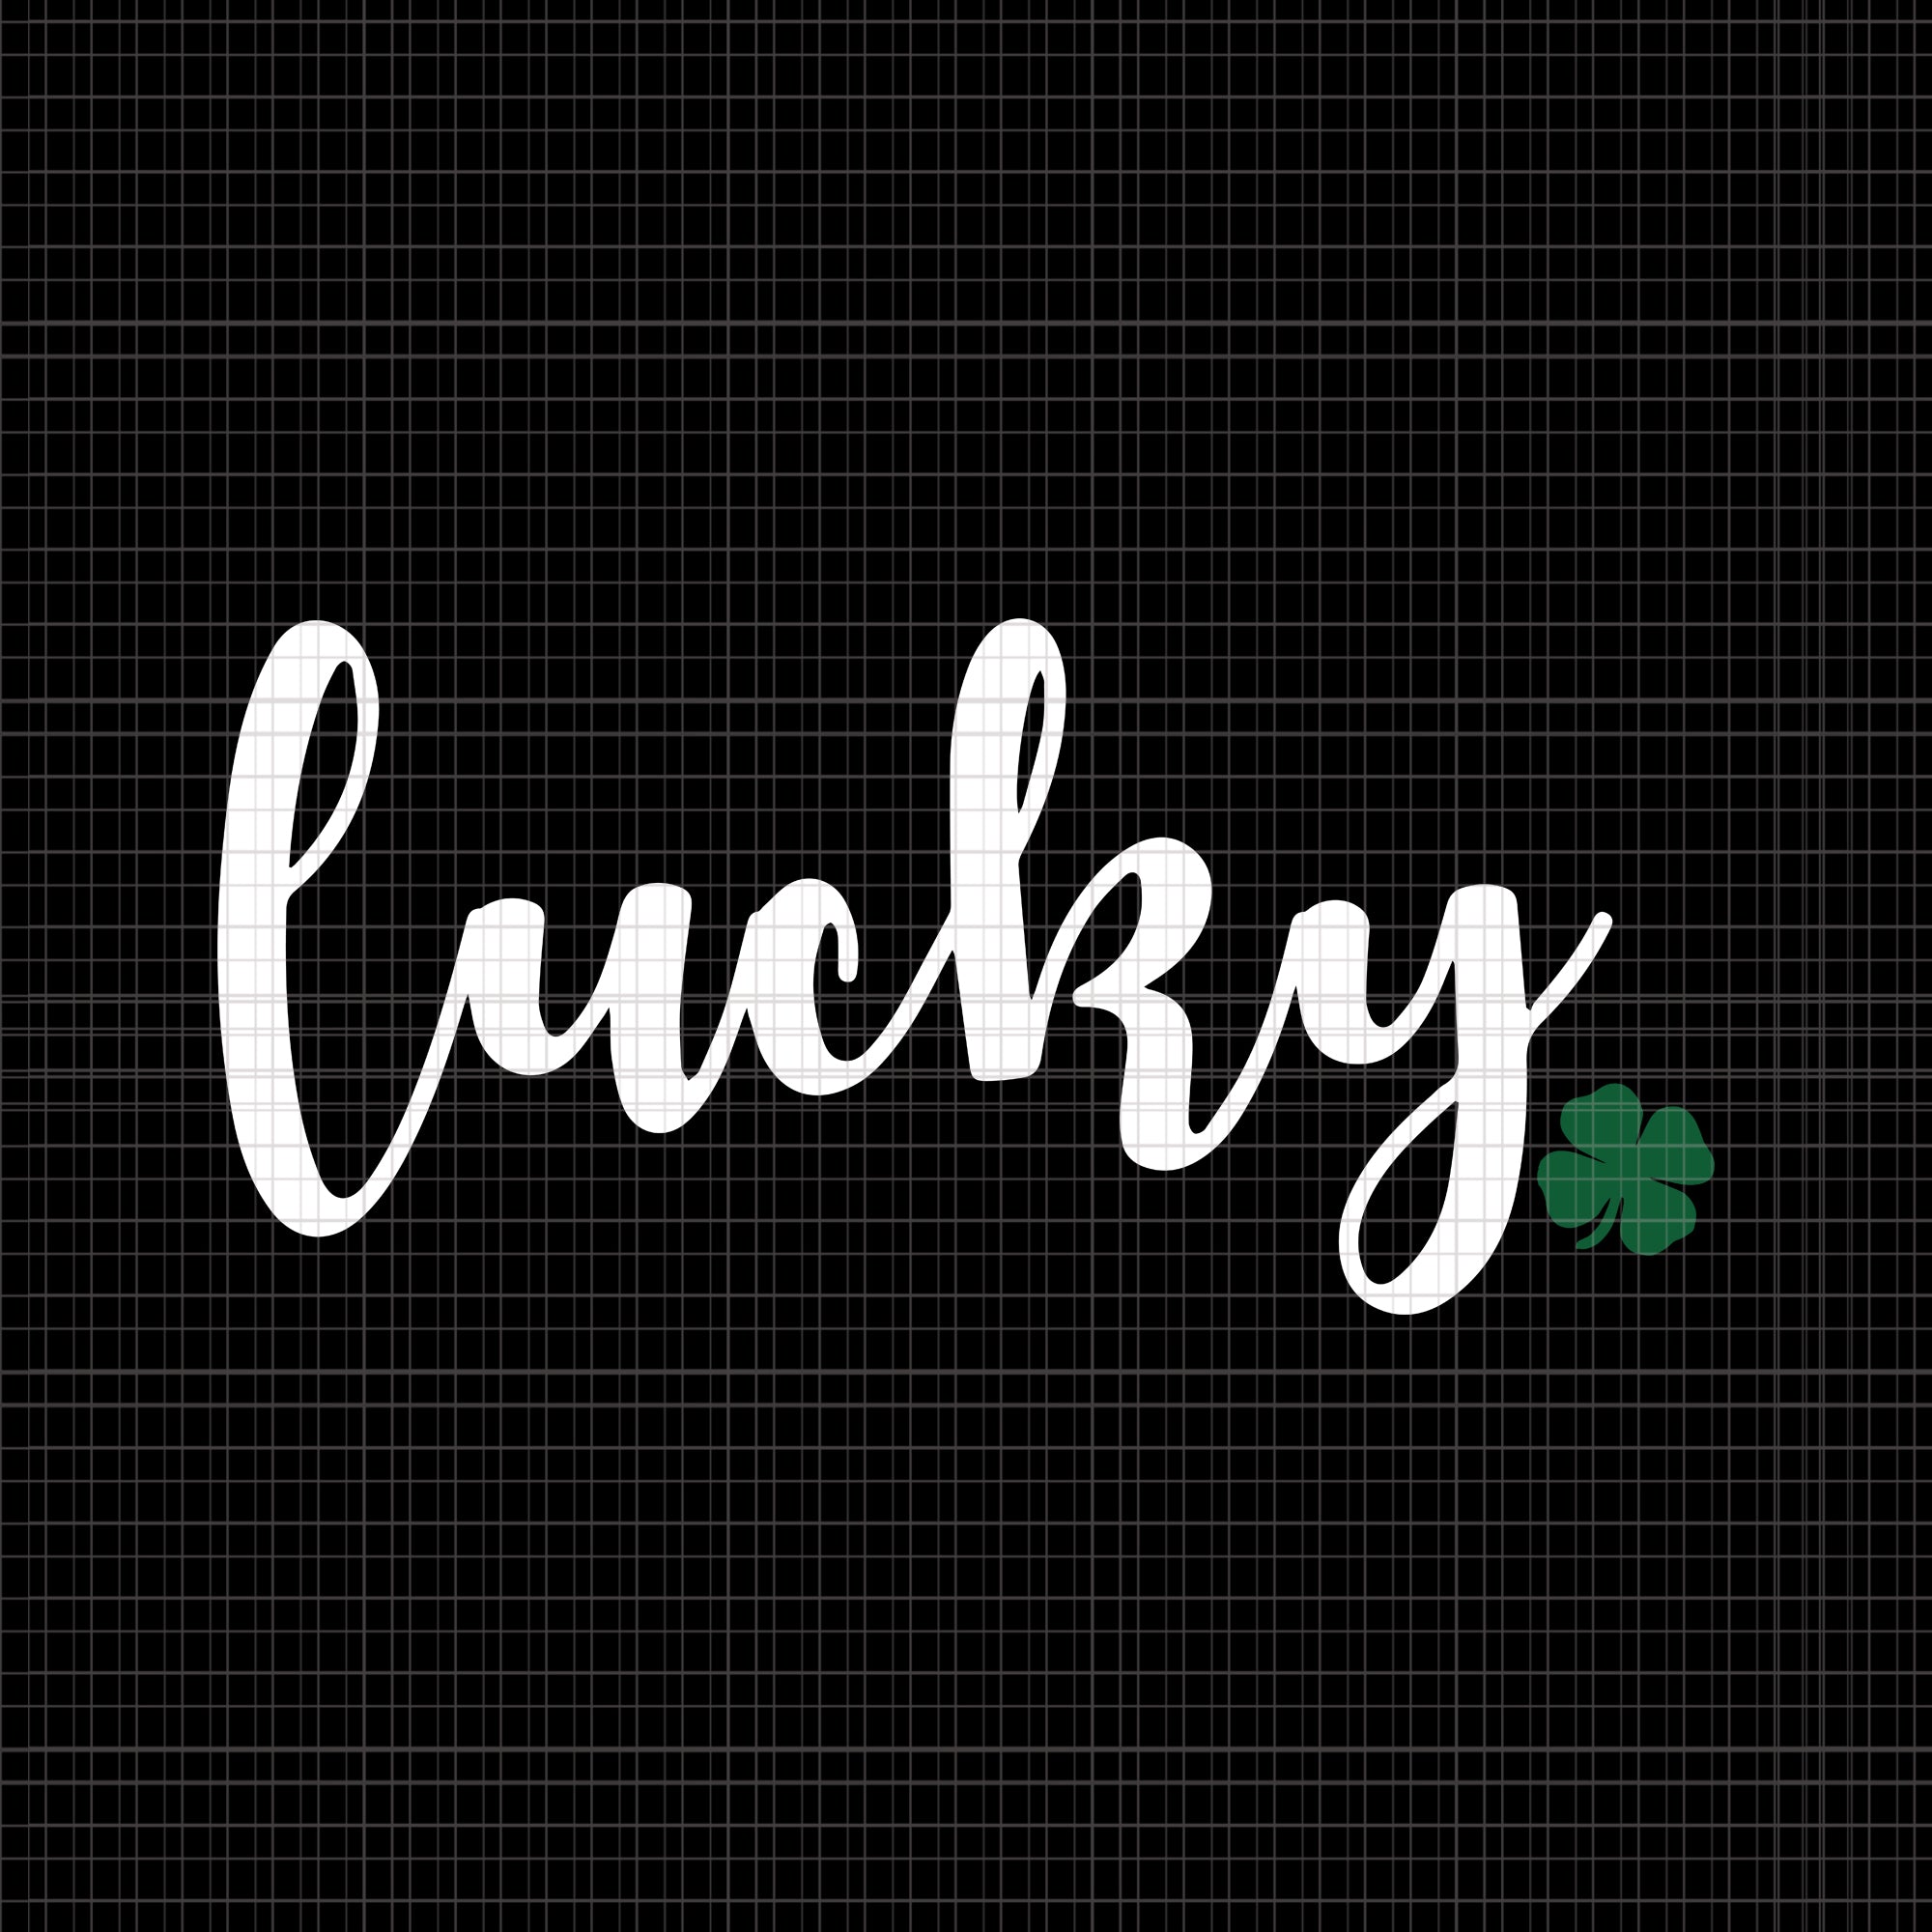 Lucky Shamrock svg, lucky svg, lucky irish, Lucky Shamrock, Lucky Shamrock St Patricks Day Irish ASM Graphic, lucky shamrock